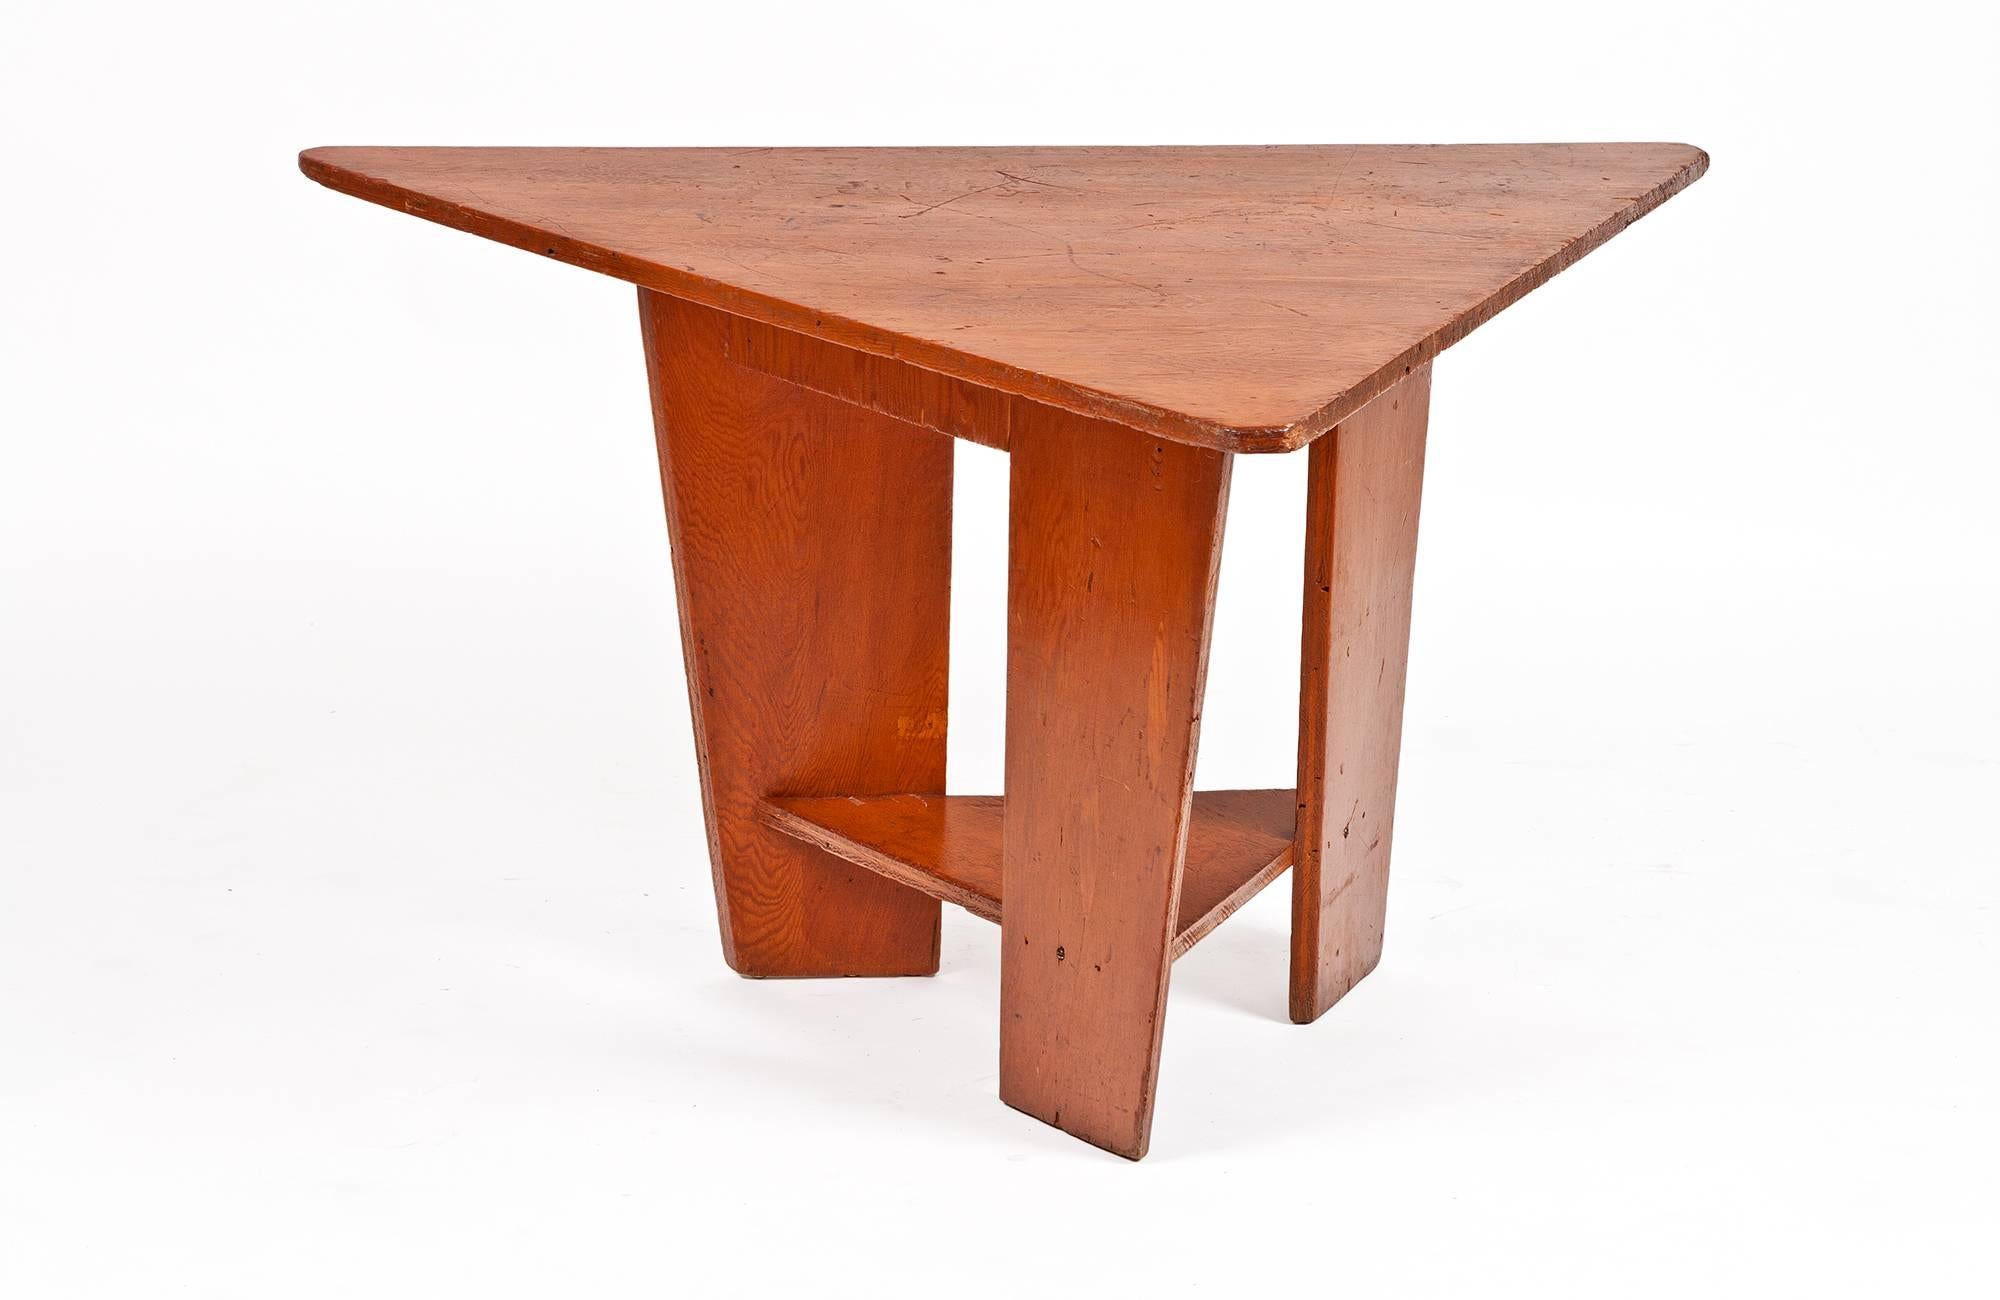 Ce trio de banquettes à charnières et une table ont été conçus par Frank Lloyd Wright et achevés en 1951 pour la Unitarian Meeting House, que Wright a également conçue, au 900 University Bay Drive, Shorewood Hills, Madison, Wisconsin. Les composants